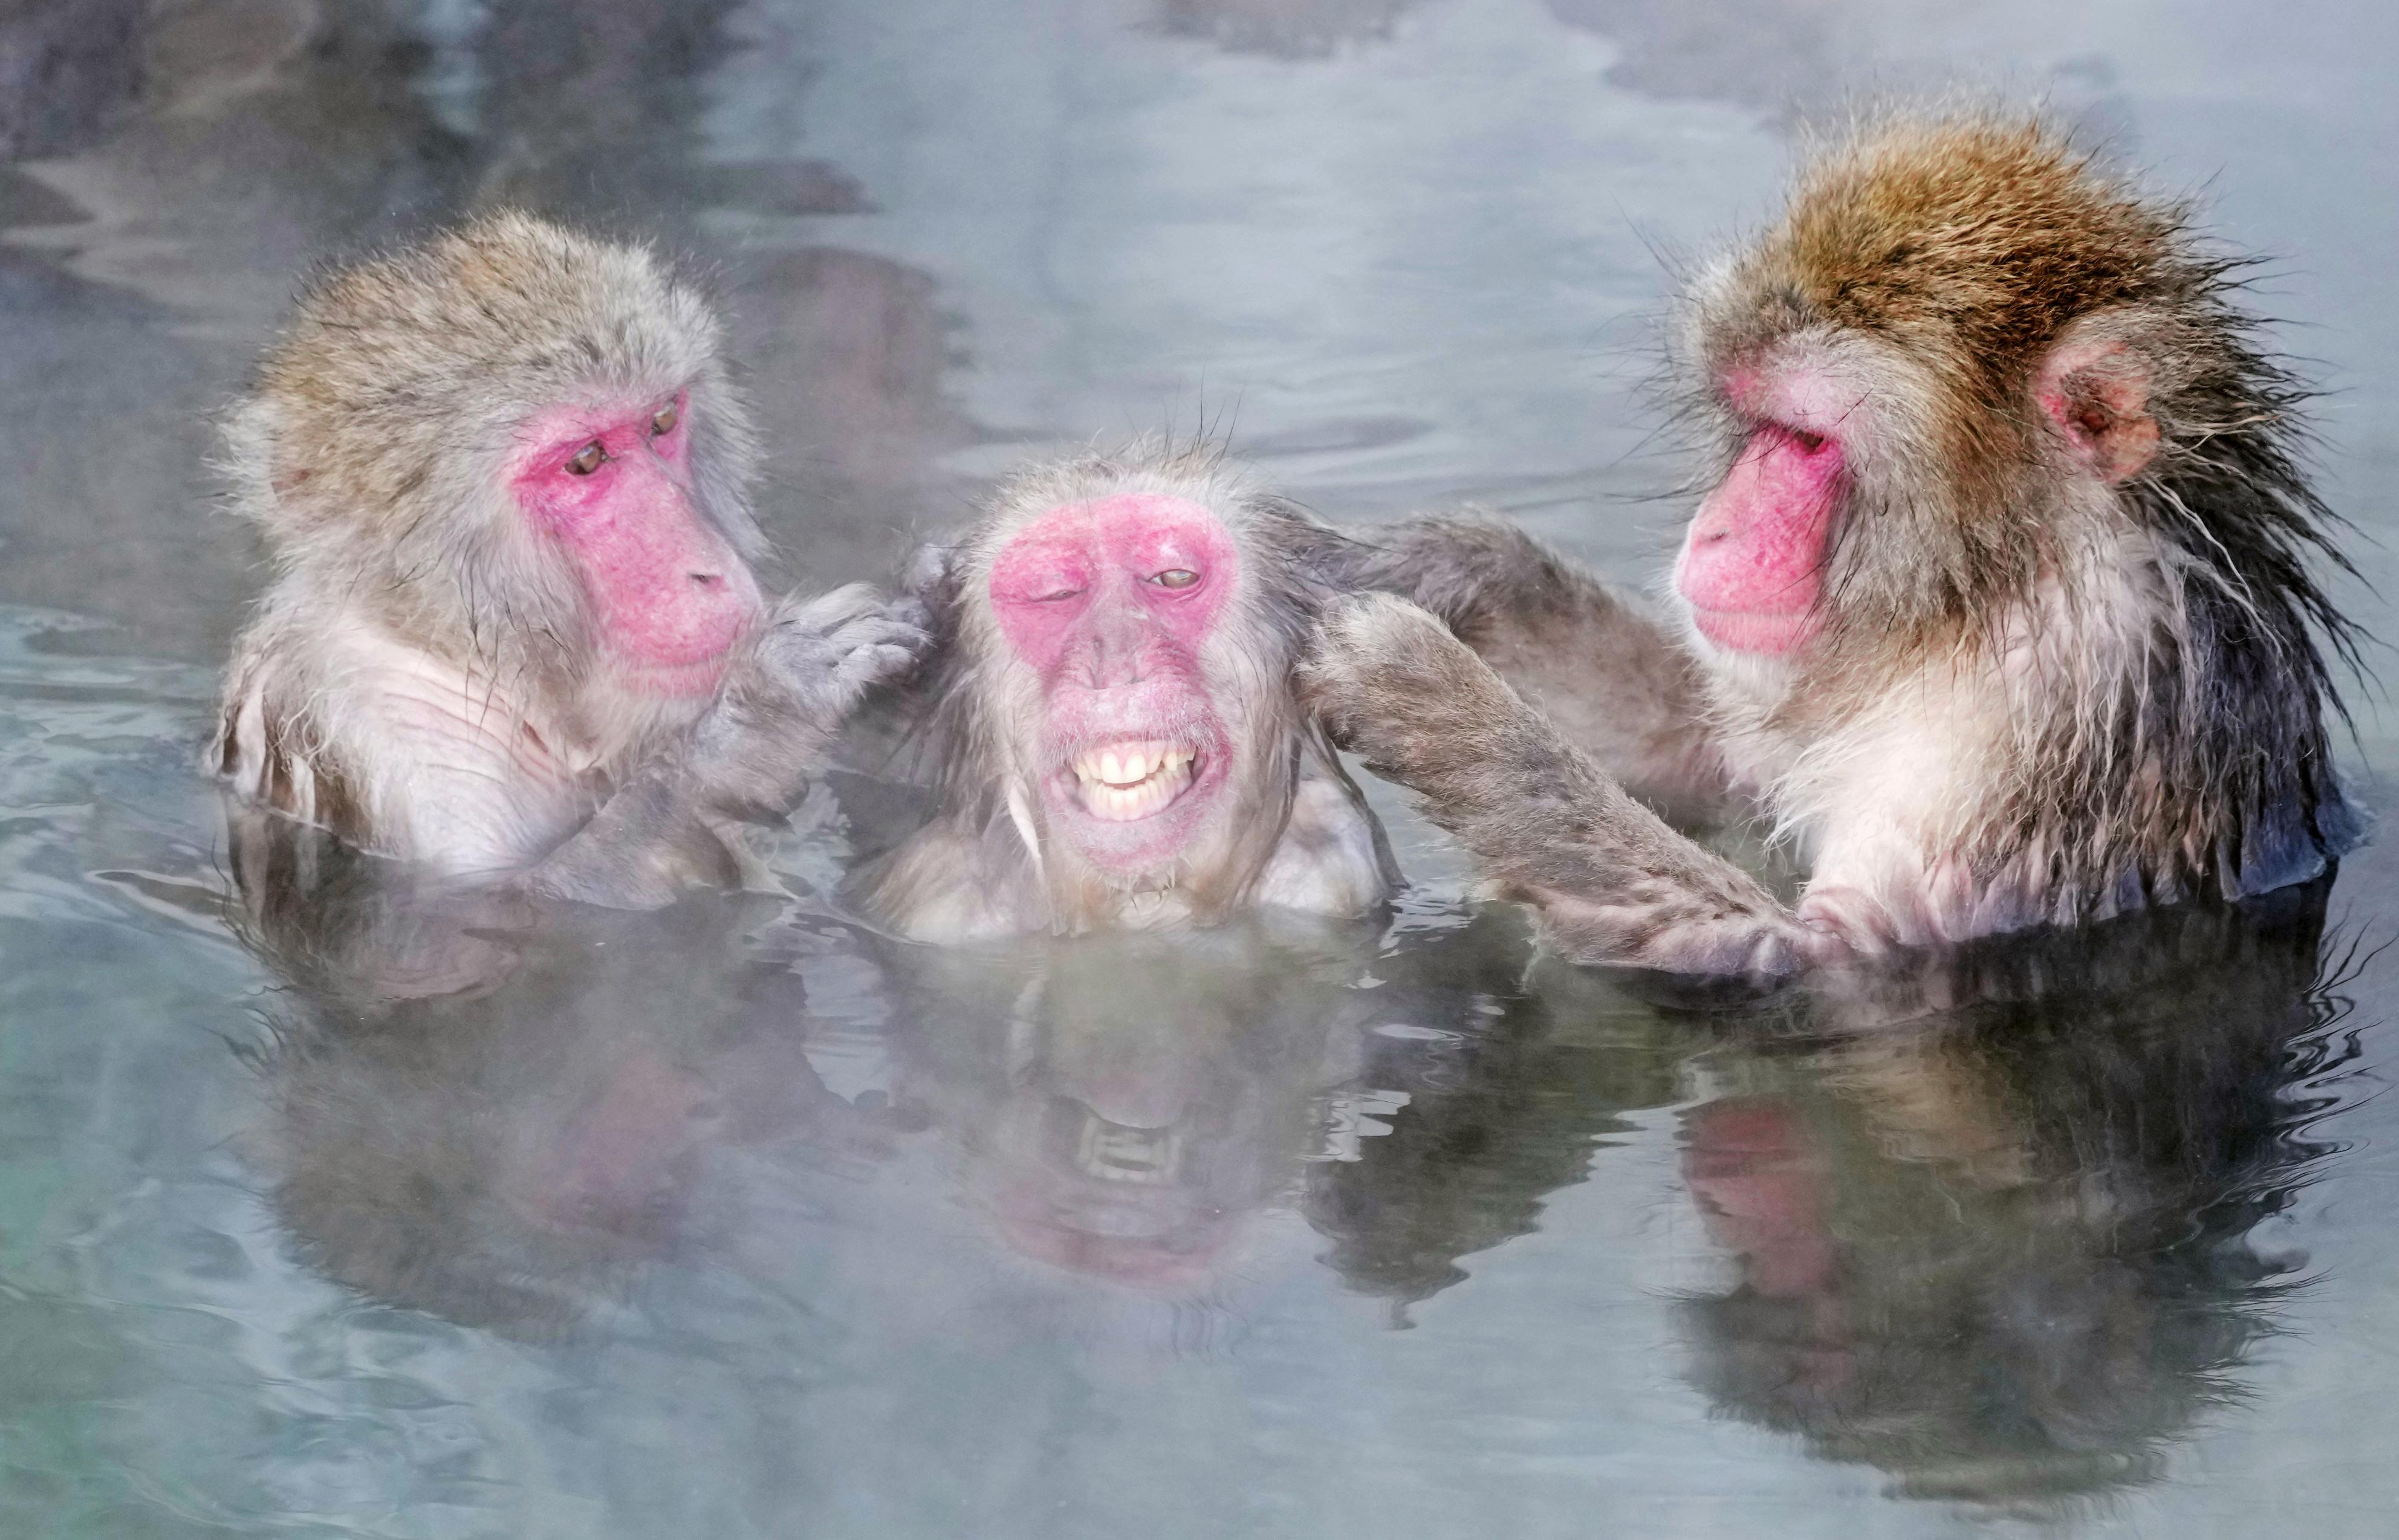 温泉好き８割 湯温に 厳しい お猿さん 露天風呂で満足げ 函館市熱帯植物園 産経ニュース